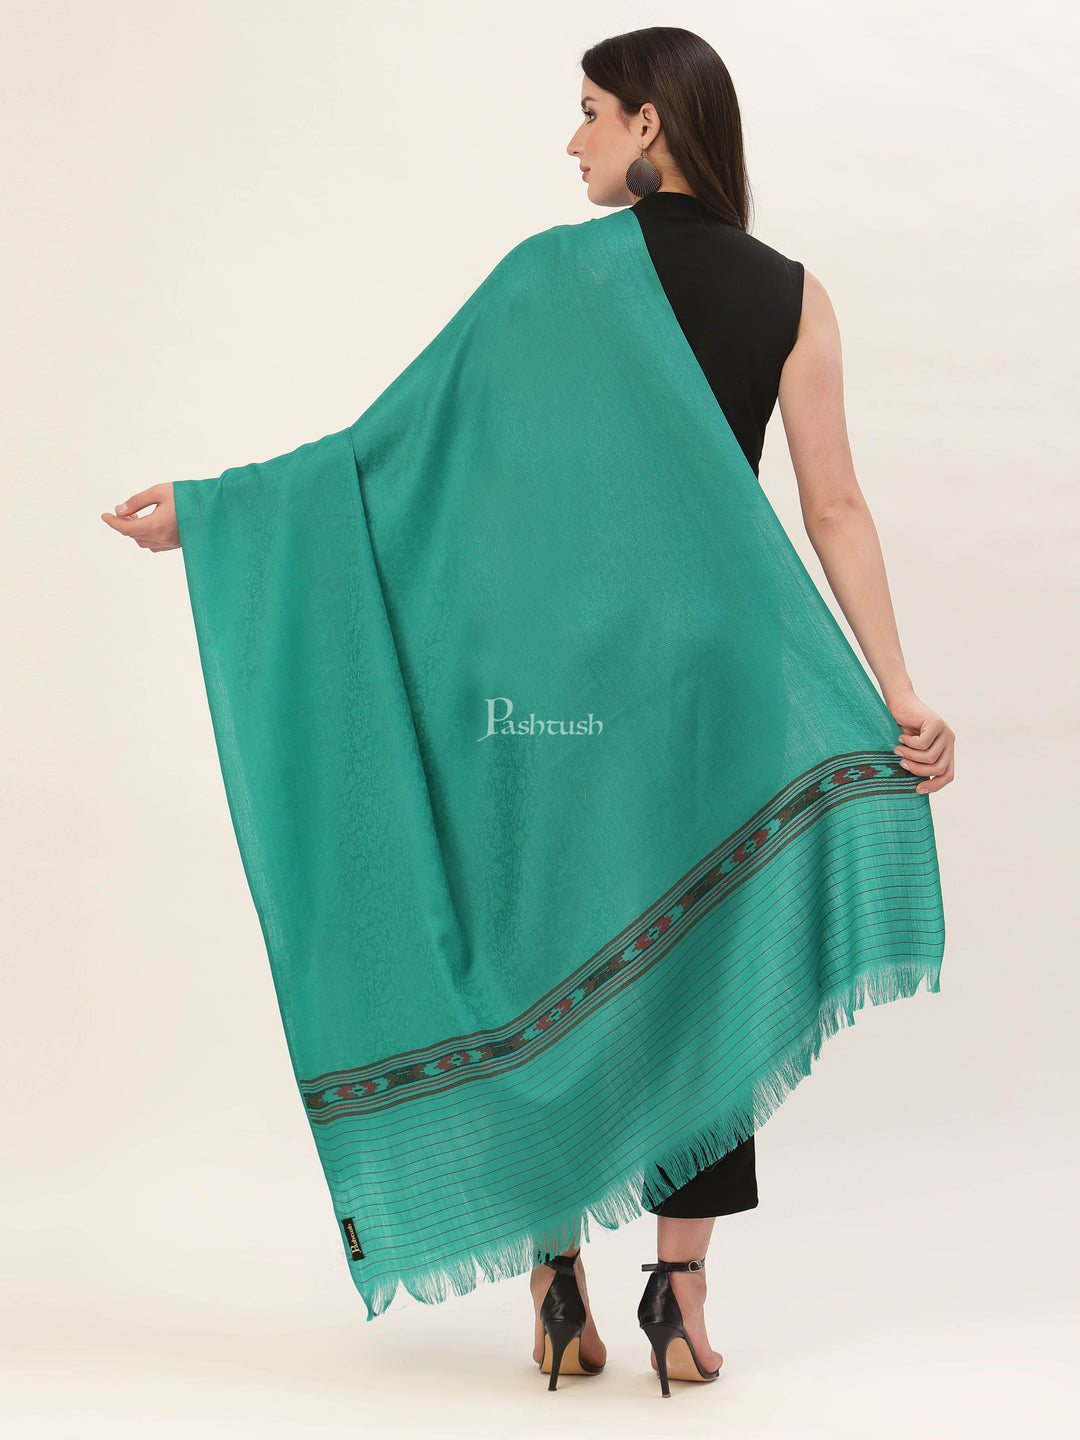 Pashtush India Womens Shawls Pashtush Womens Aztec Weave Shawl From Himachal, Green